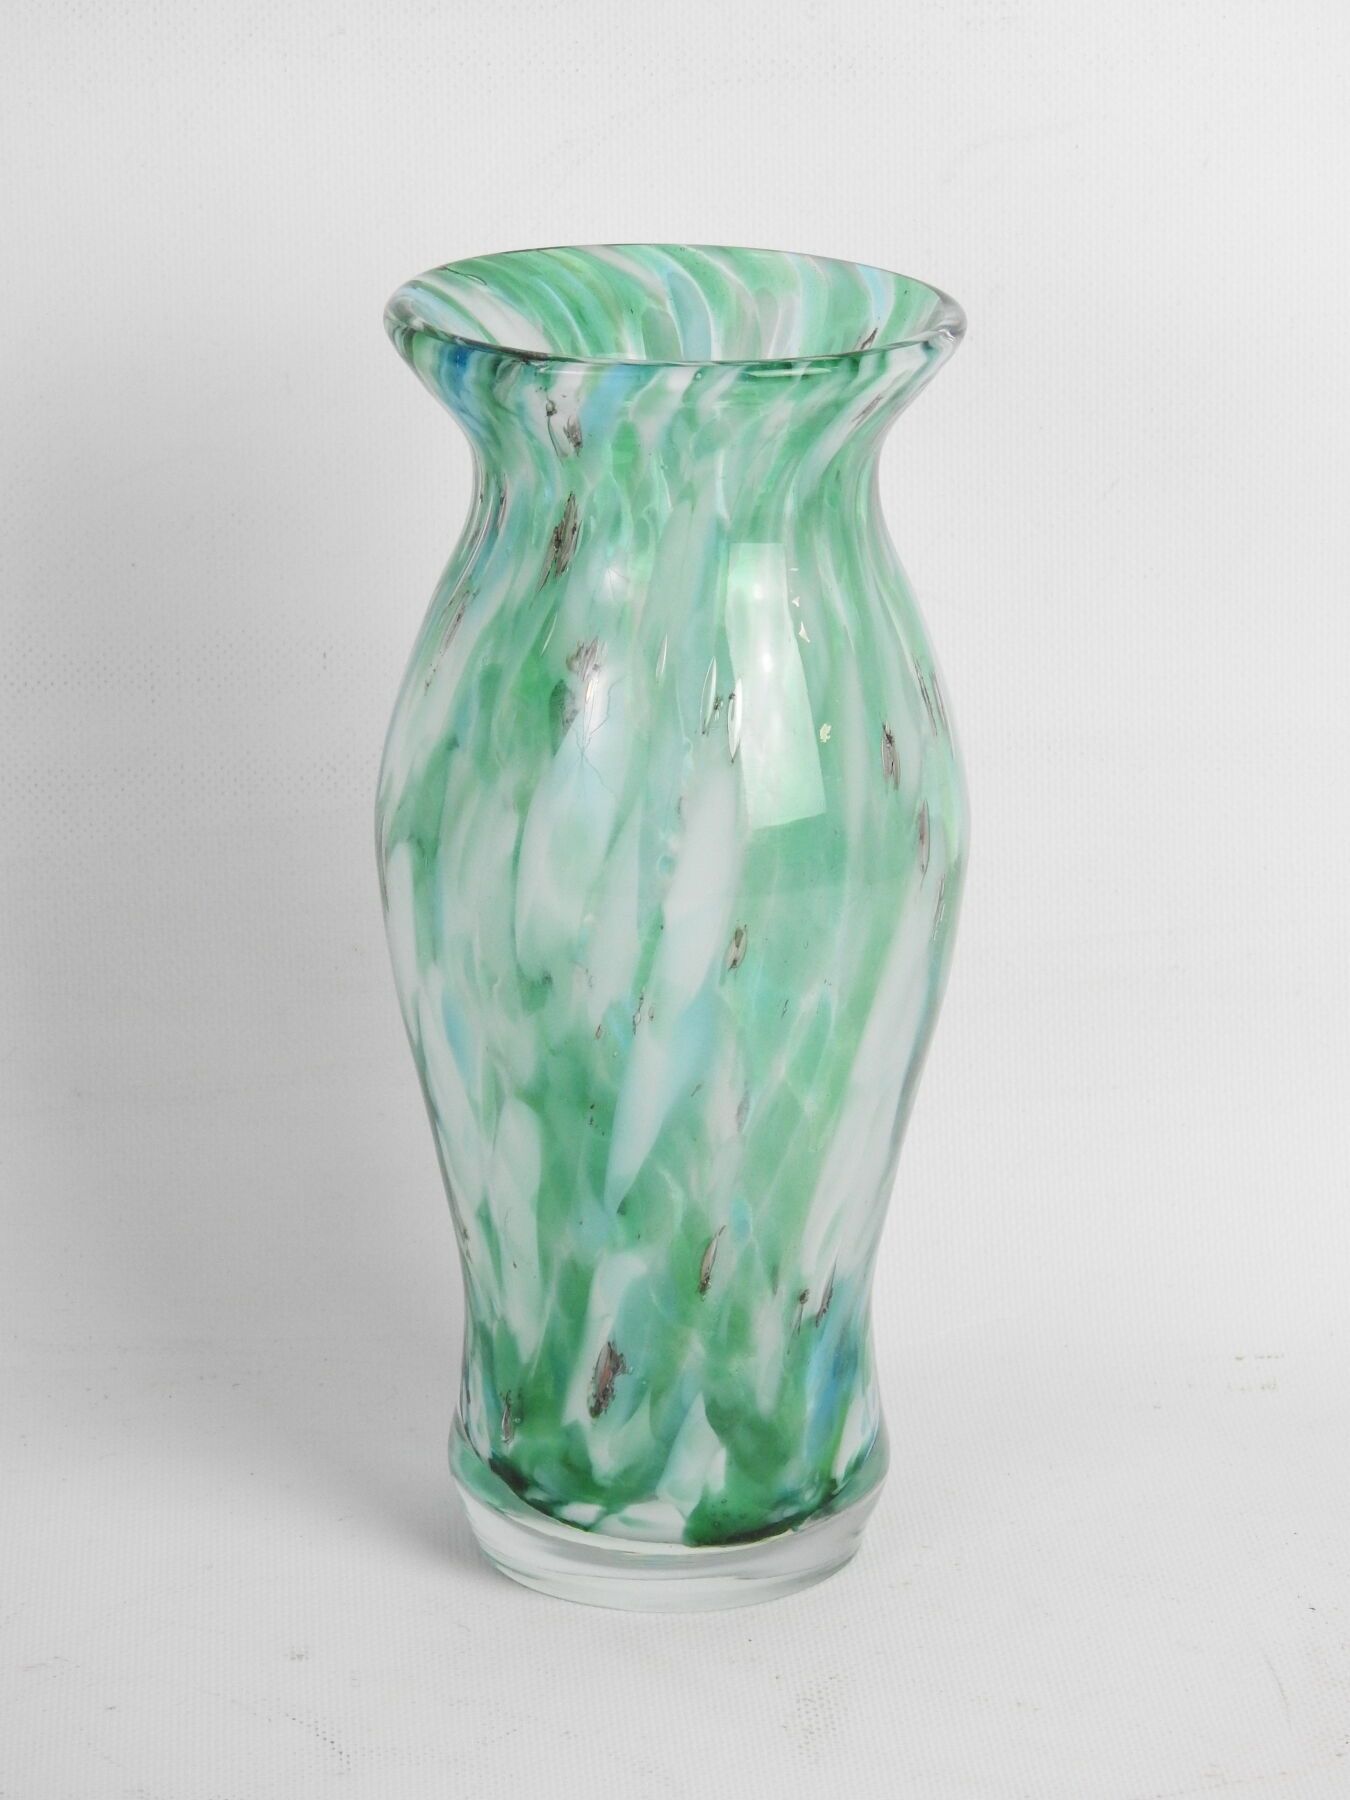 Null Balusterförmige Vase aus gesprenkeltem Glas in grünen und weißen Farbtönen.&hellip;